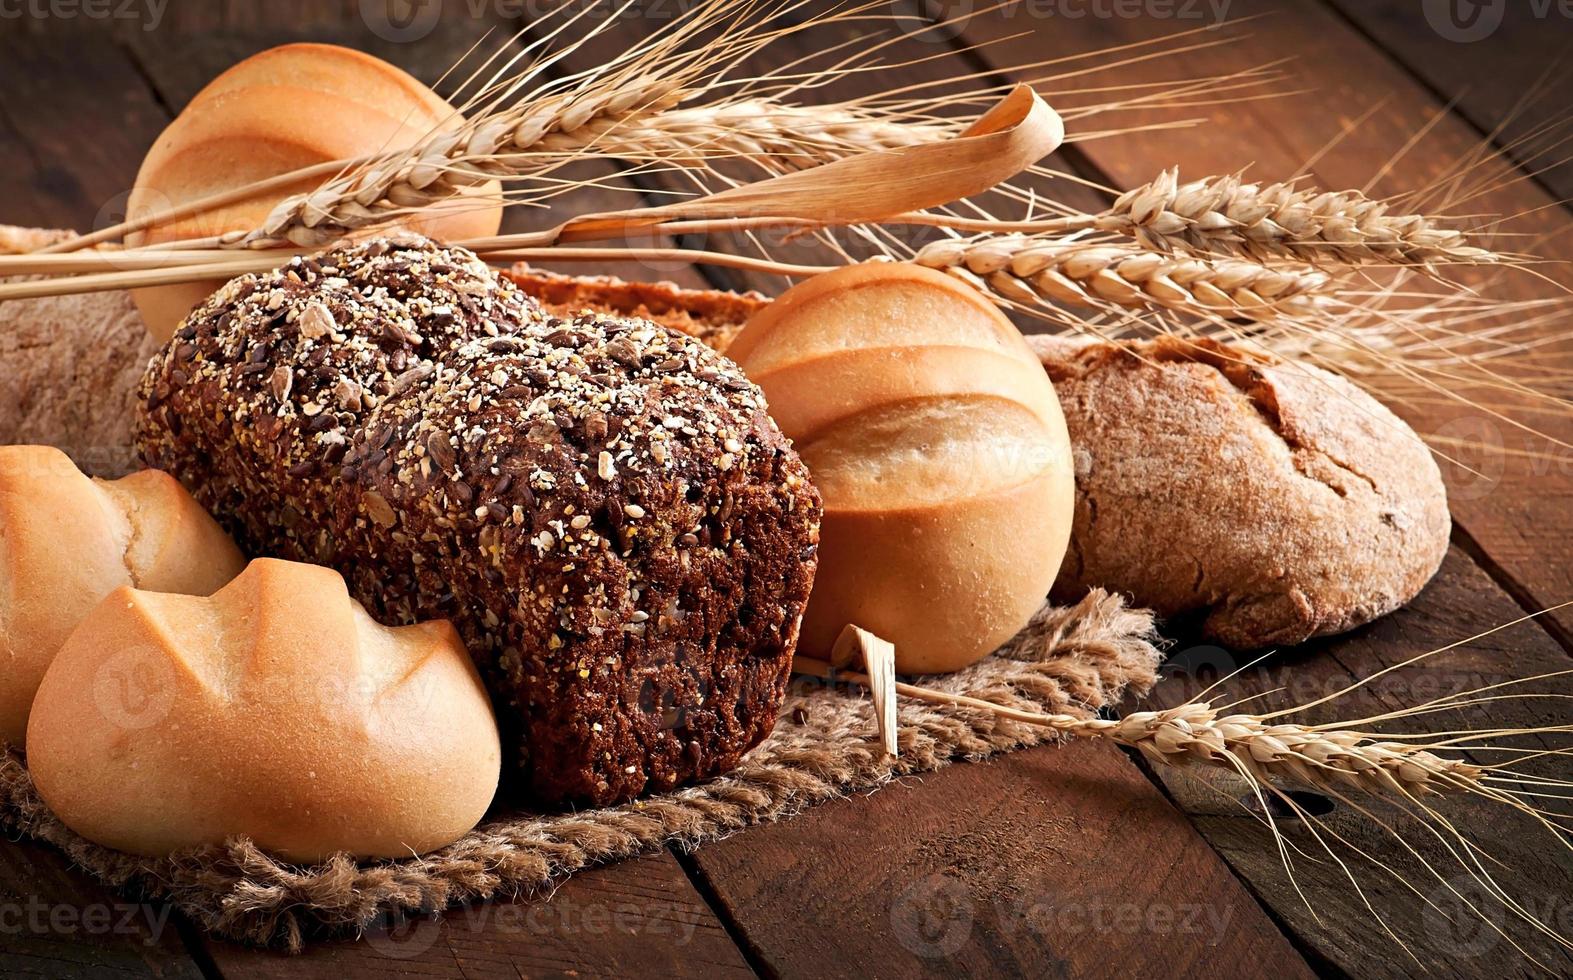 Auswahl an gebackenem Brot auf einem Holztisch foto